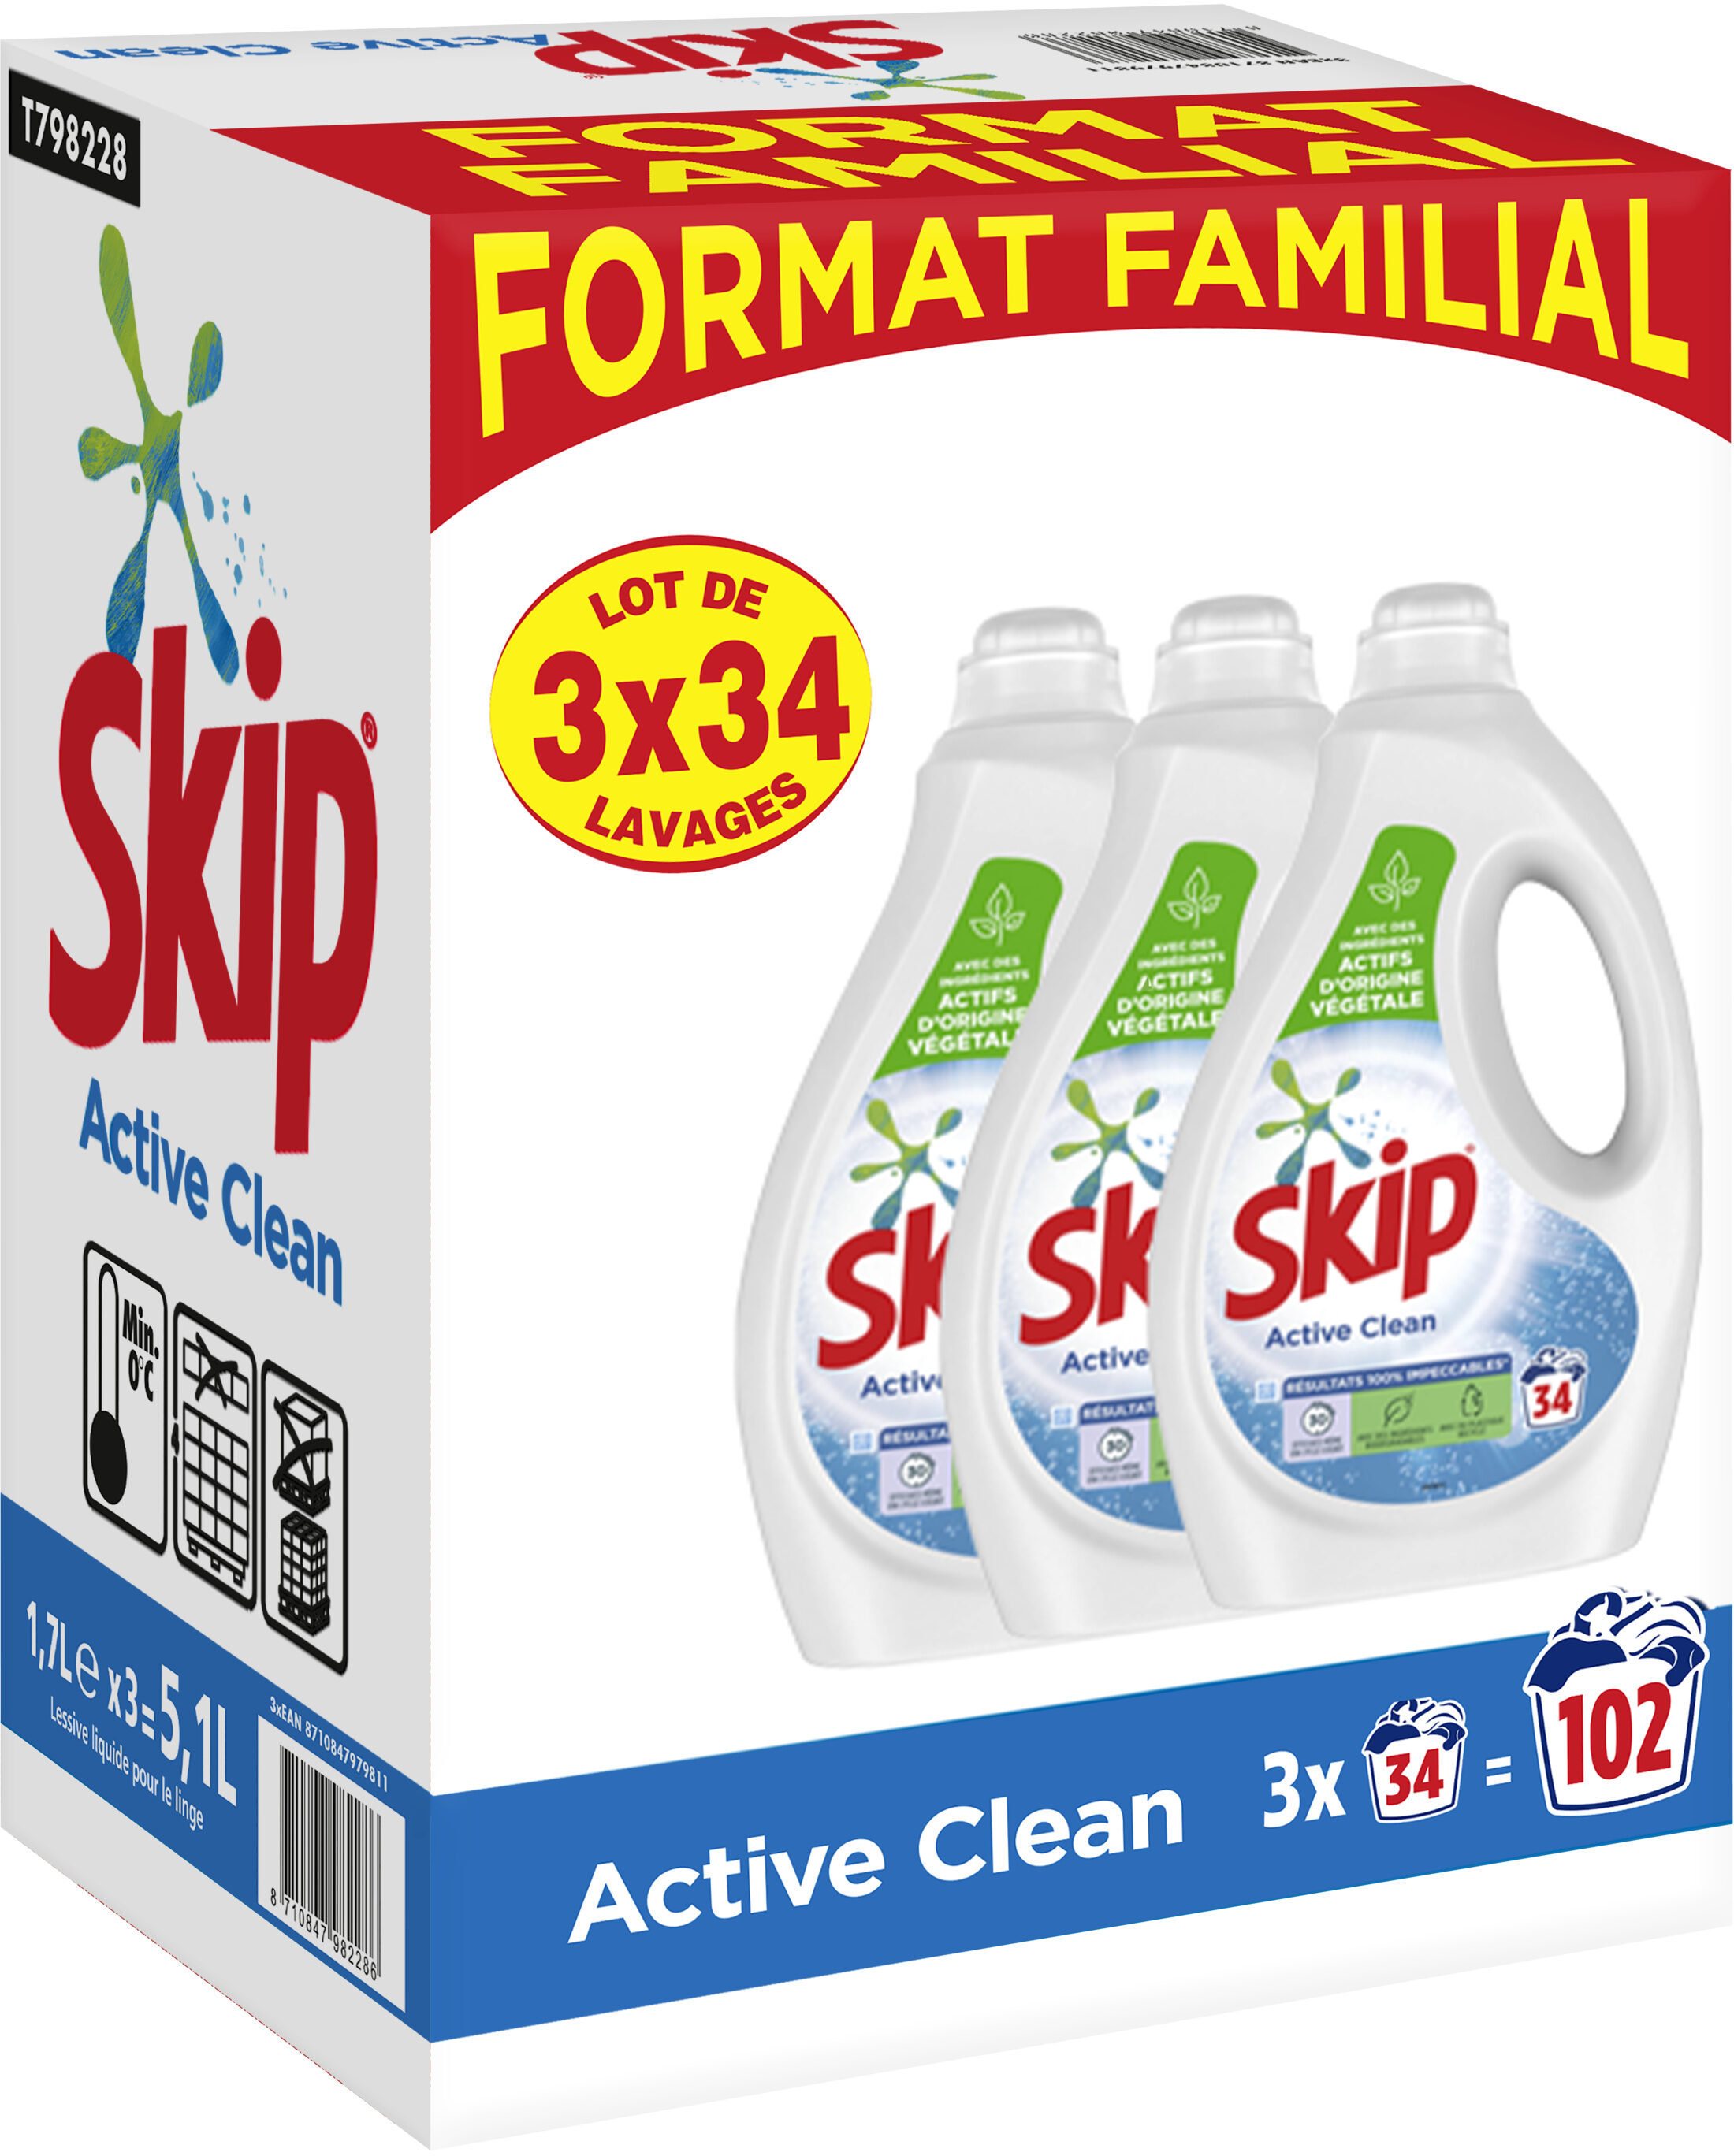 Lessive liquide Skip Active Clean (Skip, 1,17L)